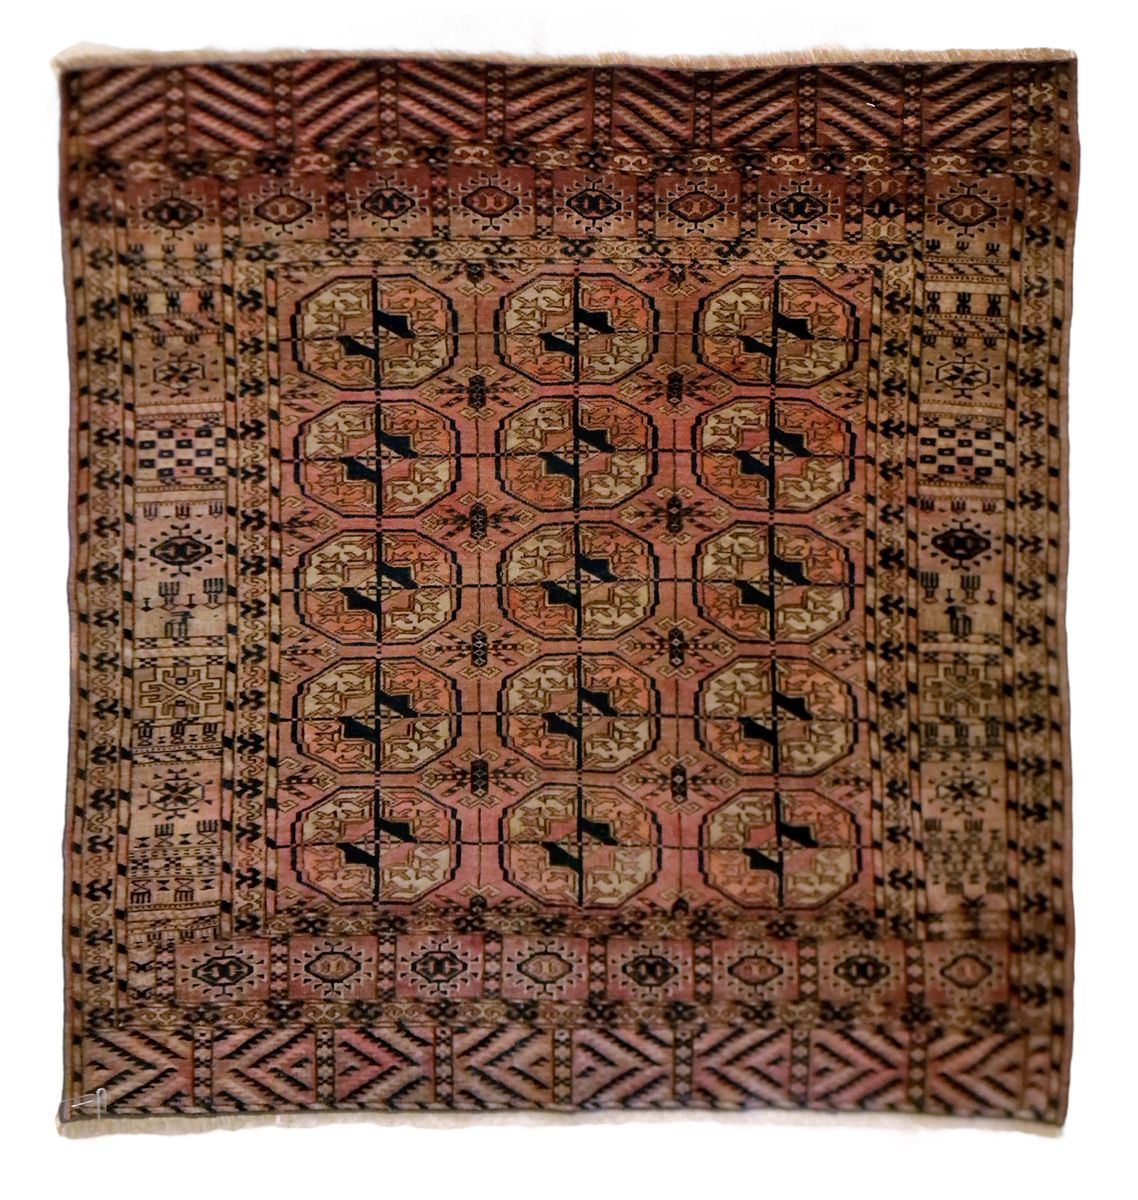 TAPIS YAMUT-BOUKHARA AU geometrisches Dekor, guter Zustand.
Maße: 100 x 115 cm

&hellip;